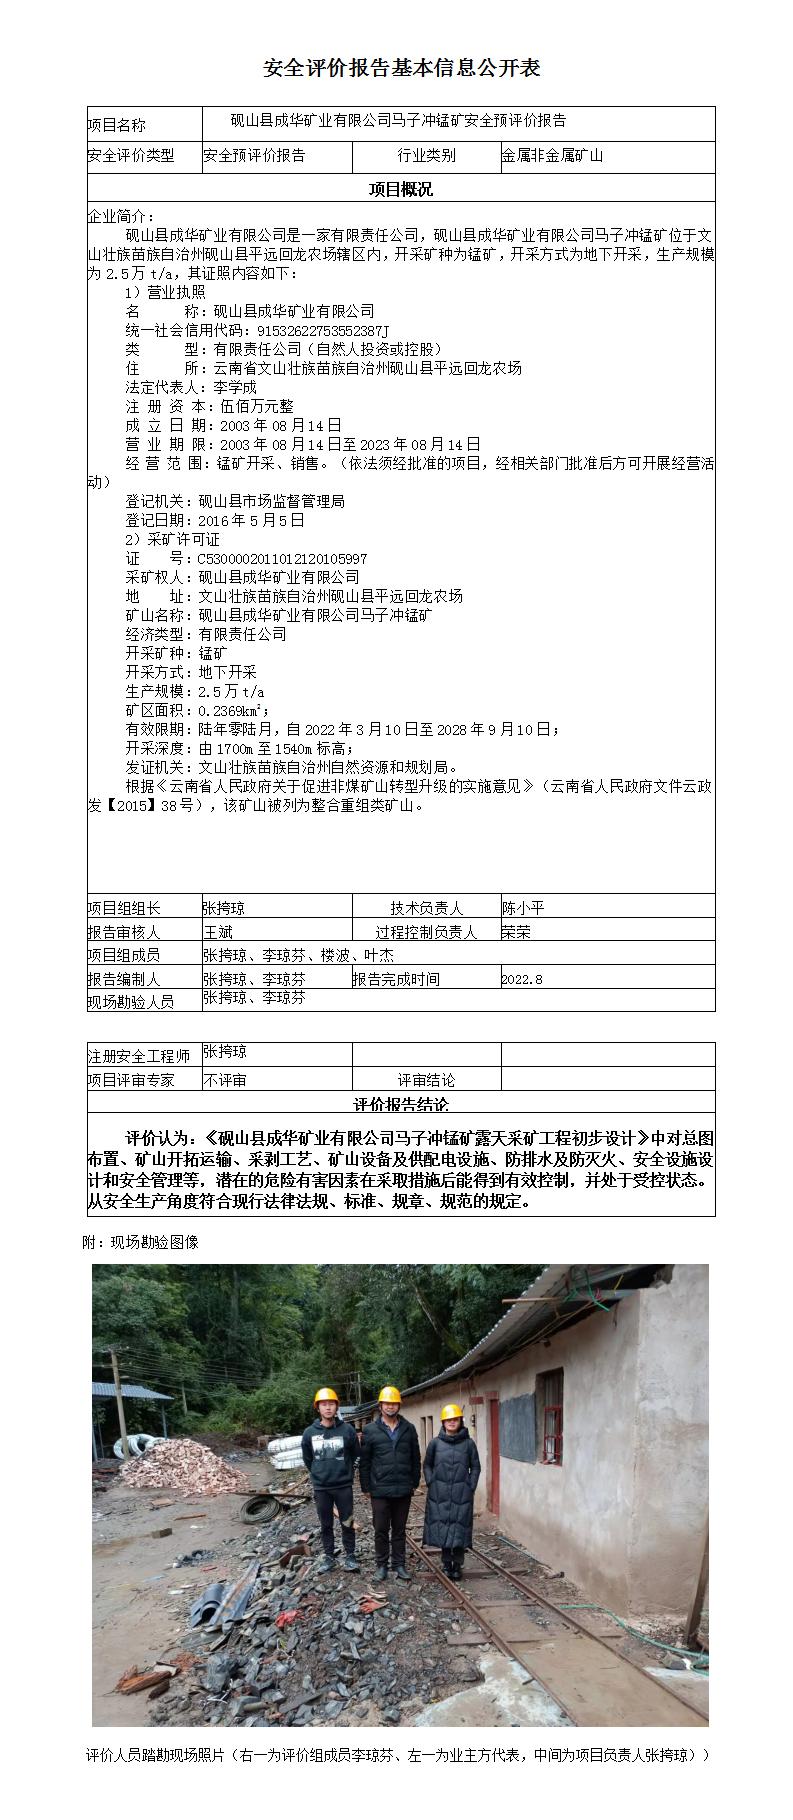 砚山县成华矿业有限公司马子冲锰矿安全预评价报告安全评价报告基本信息公开表